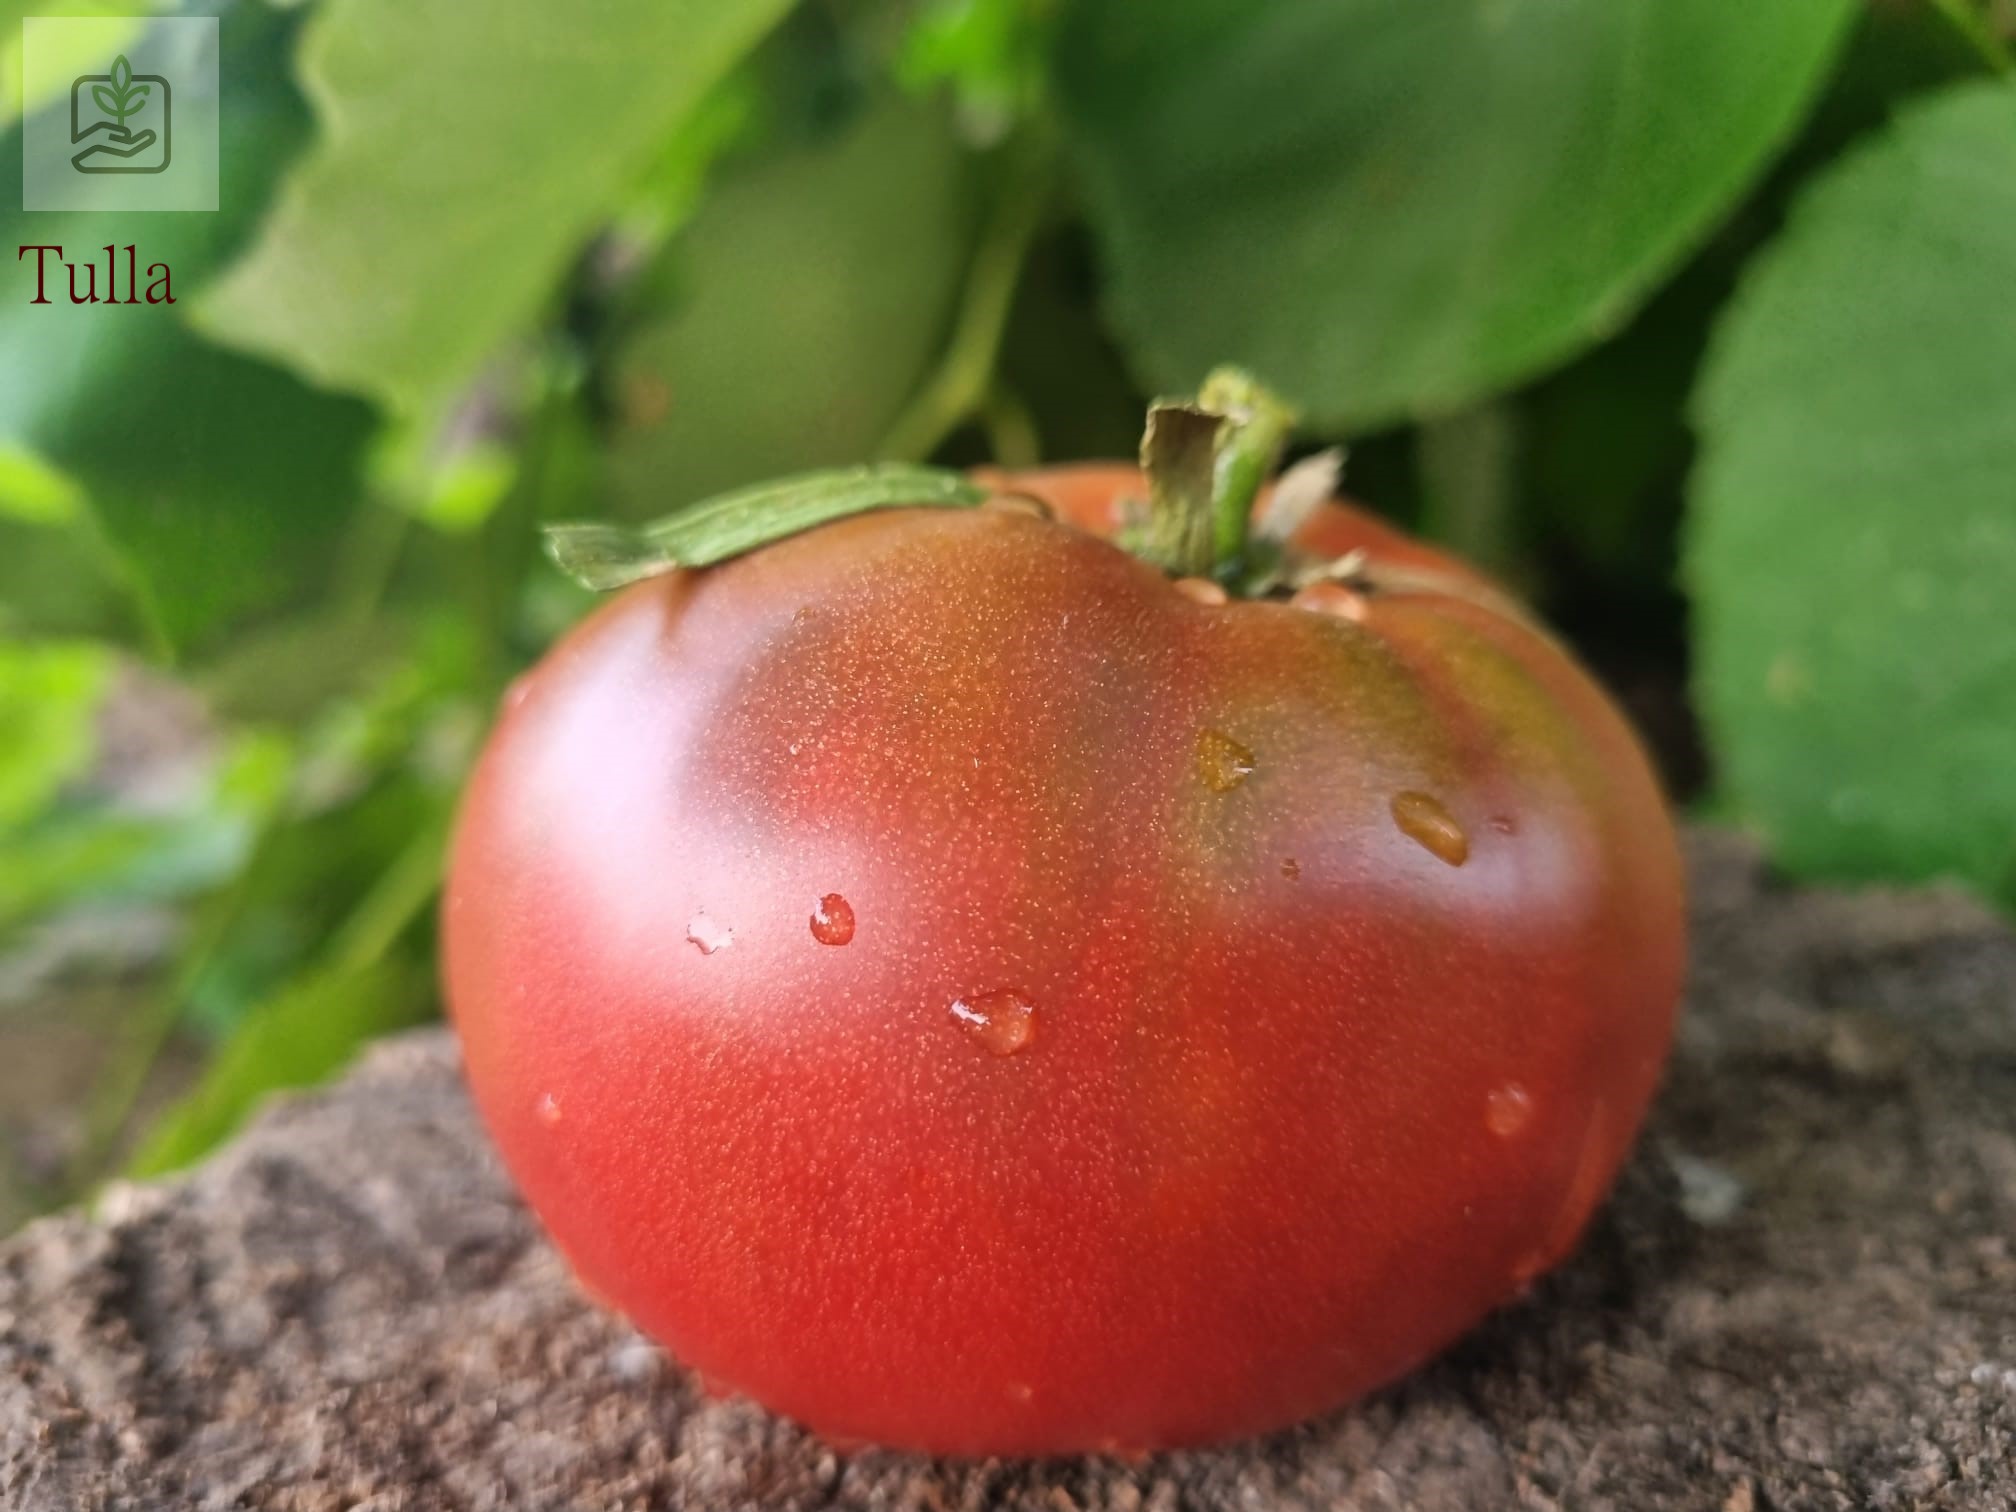 Soiul de tomate Tulla sună ca o opțiune minunată pentru grădinarii care caută tomate negre cu o aromă distinctă .